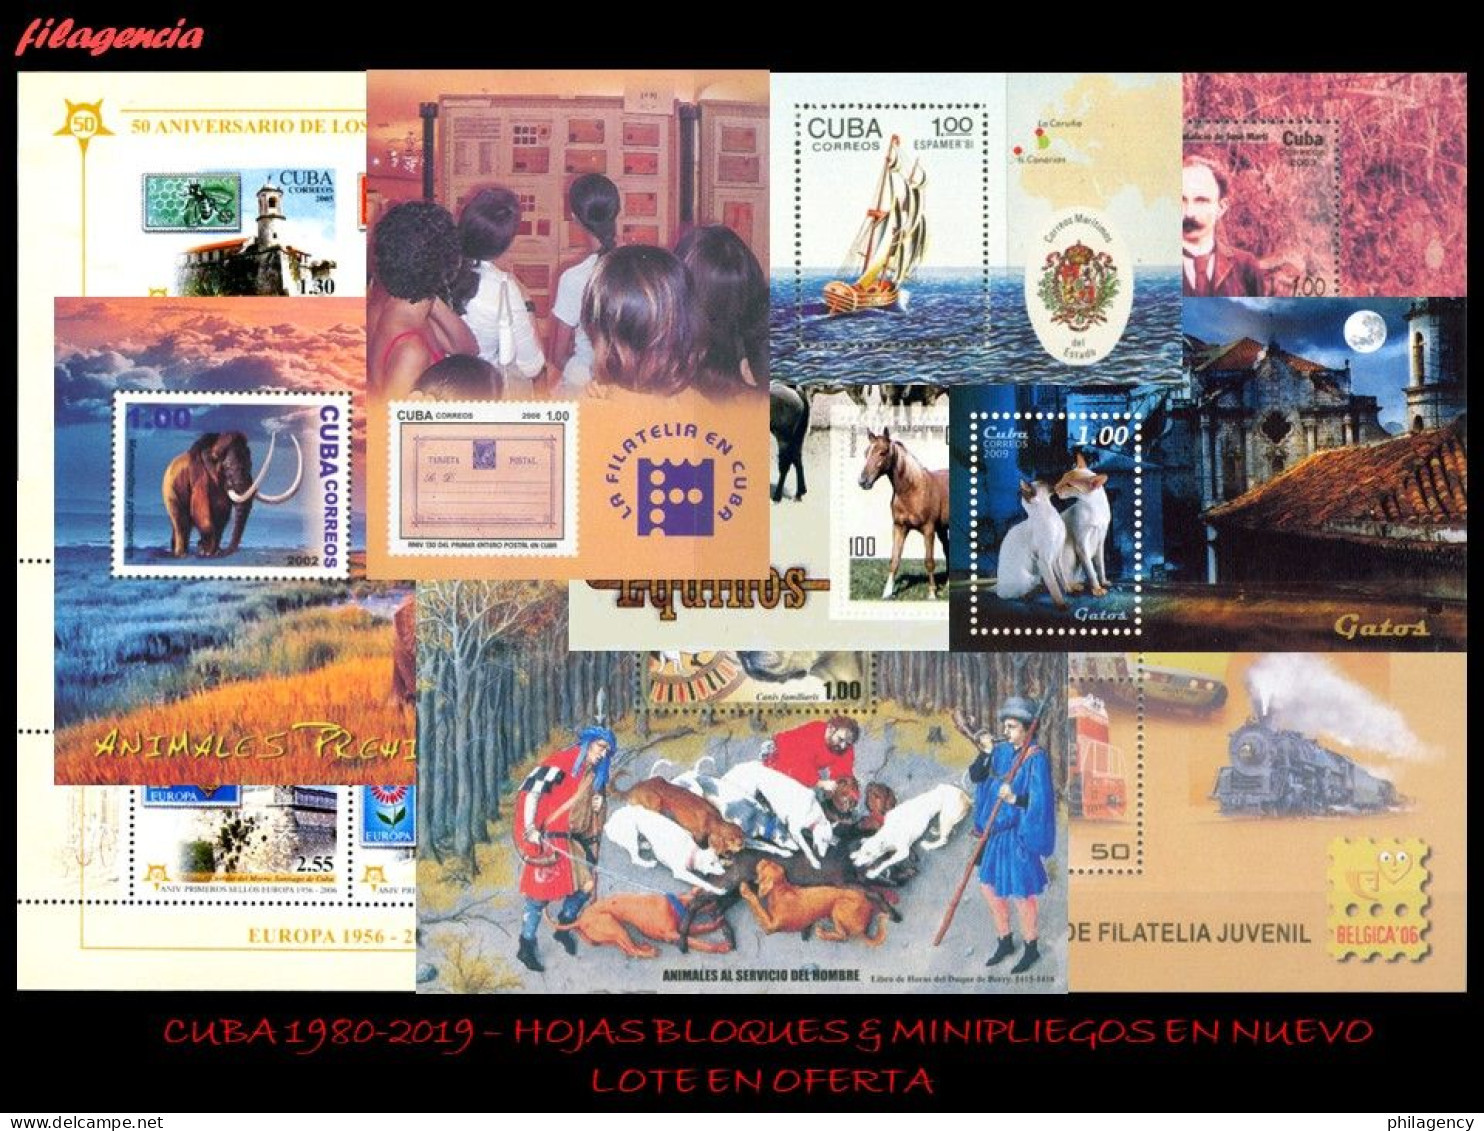 LOTES EN OFERTA. CUBA MINT. 1980-2019 LOTE DE 100 HOJAS BLOQUES & MINIPLIEGOS DIFERENTES MNH - Blocs-feuillets